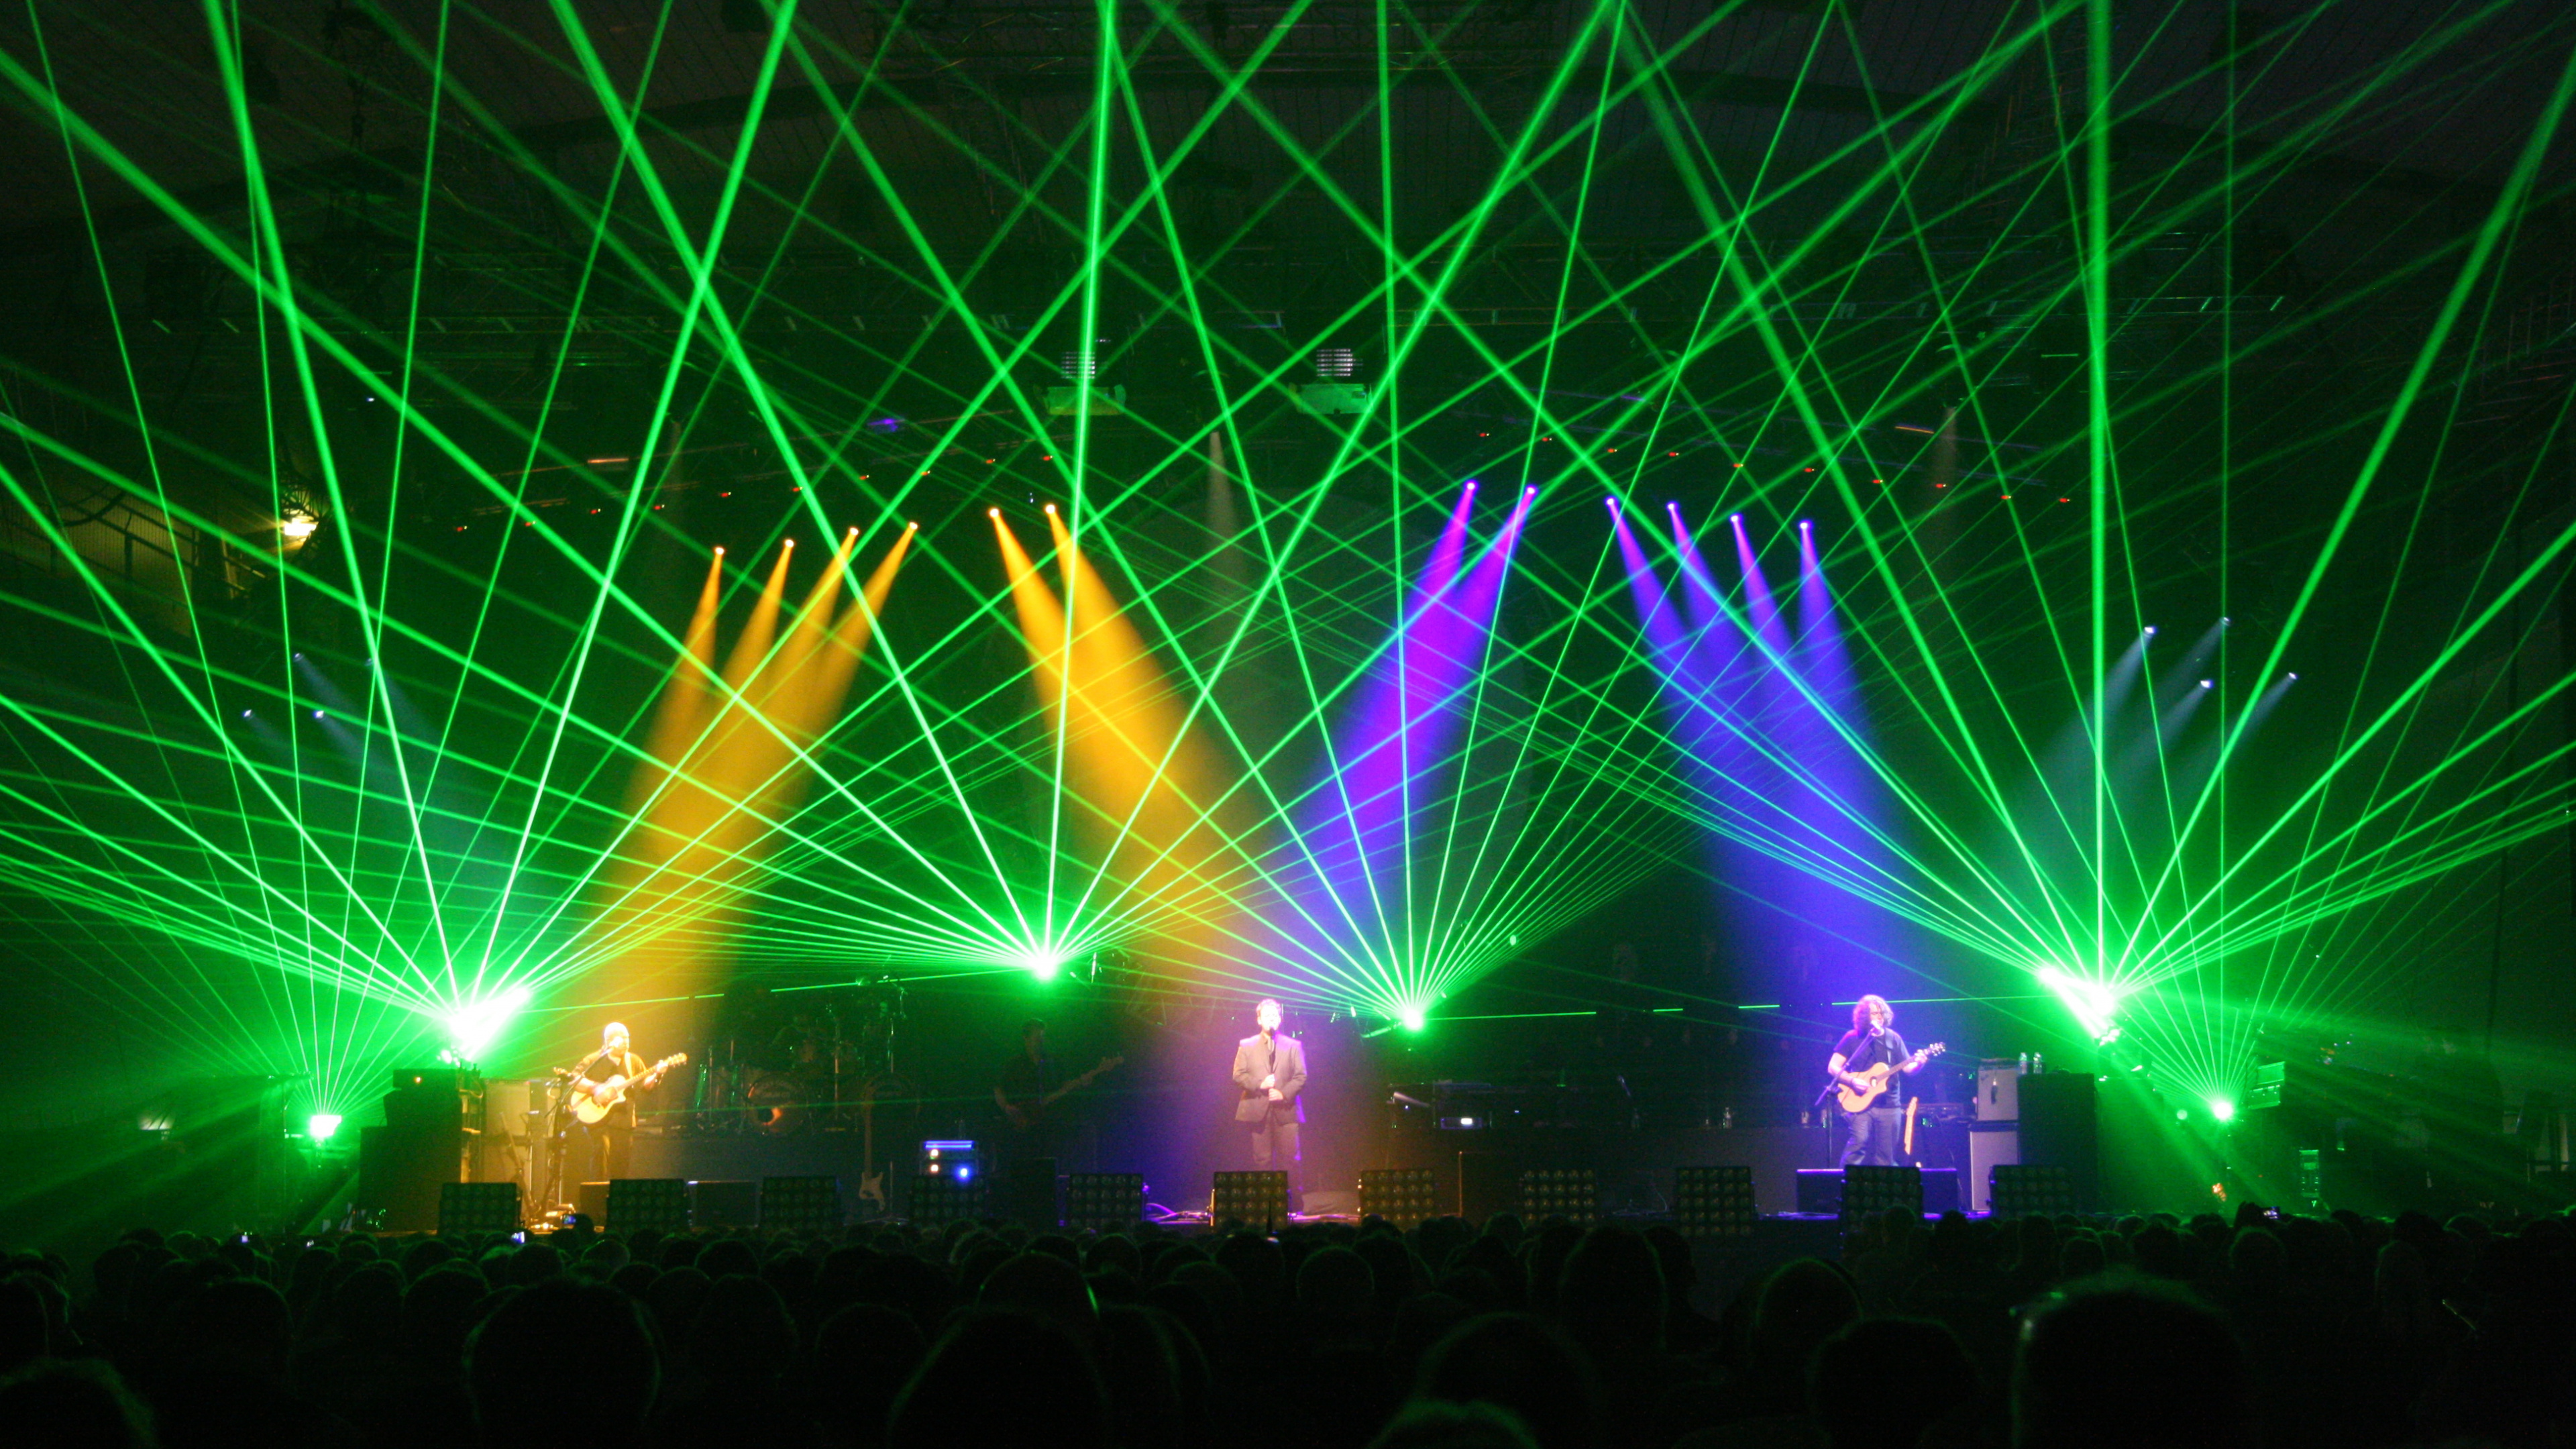 Pink Floyd, L'Australian Pink Floyd Show, Concert, Green, Lumière. Wallpaper in 3840x2160 Resolution